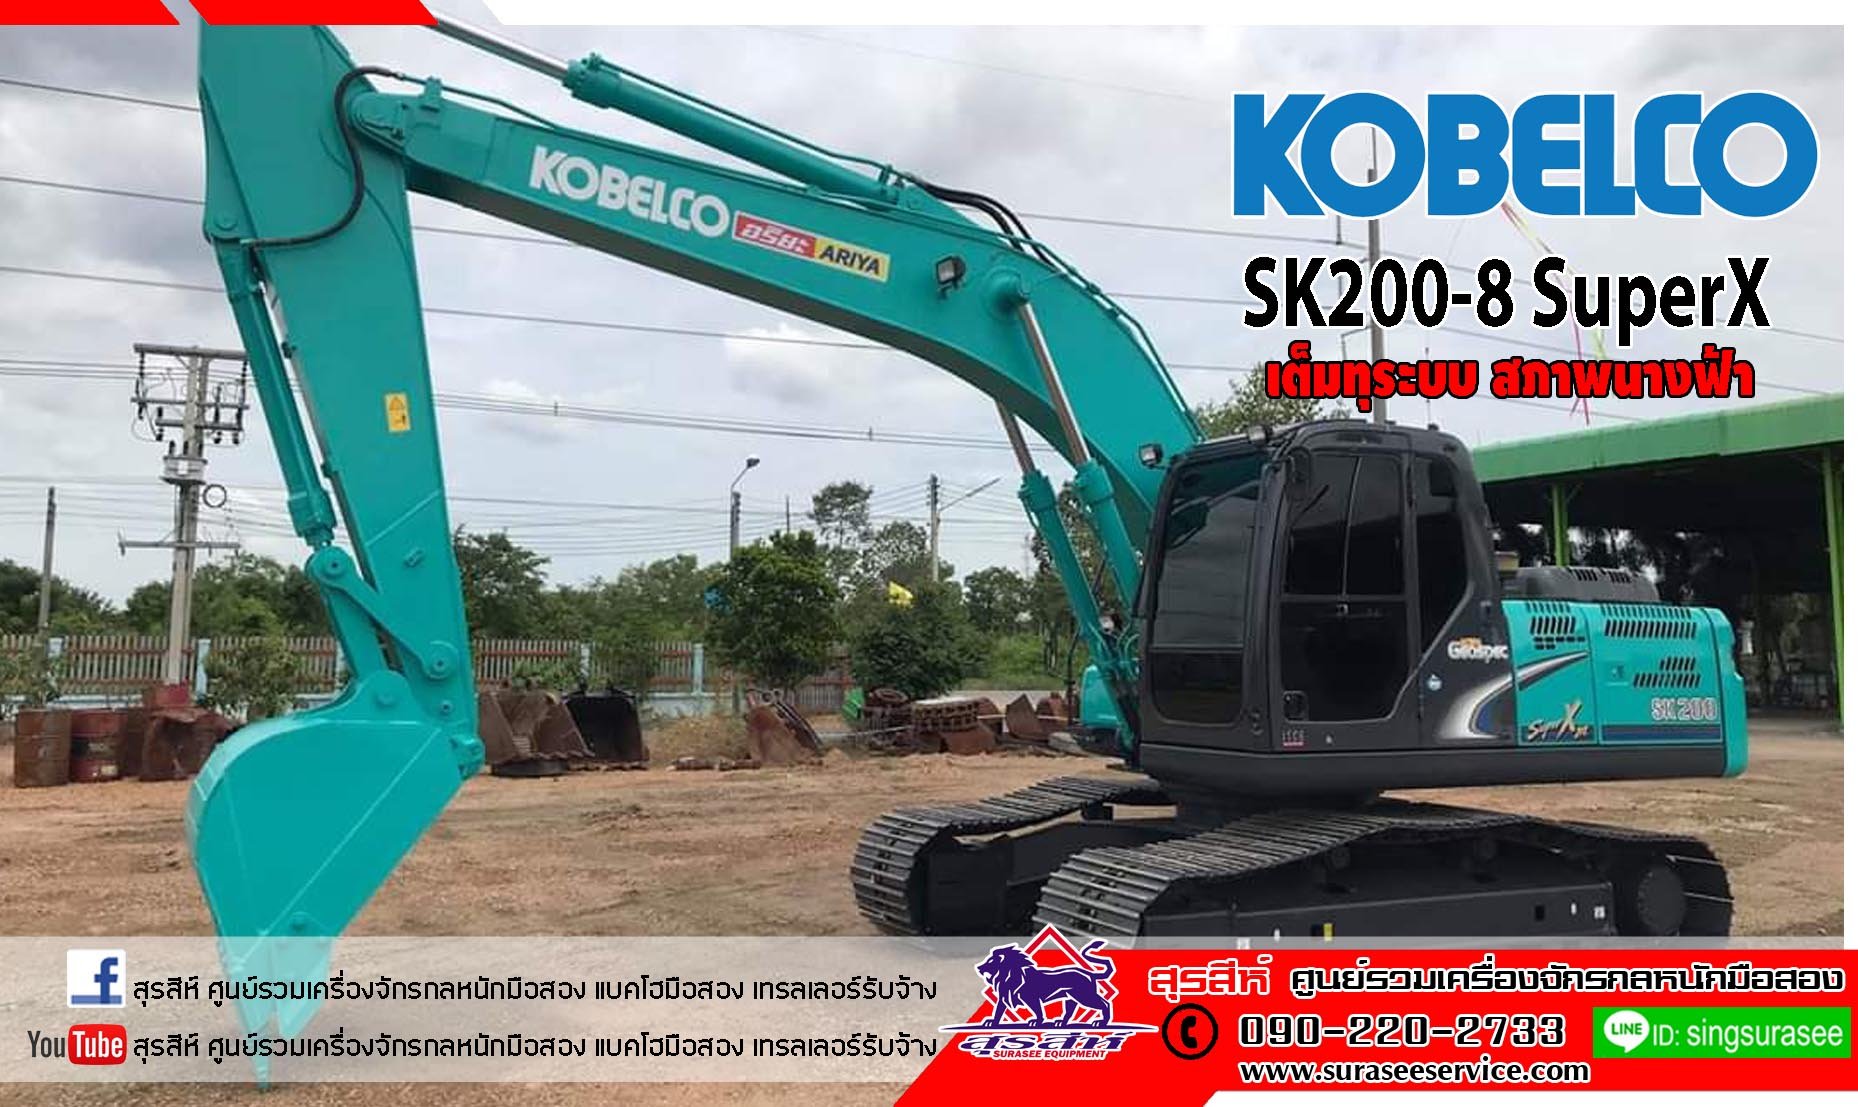 ขายแบคโฮมือสอง KOBELCO SK200-8 SuperX สภาพนางฟ้า